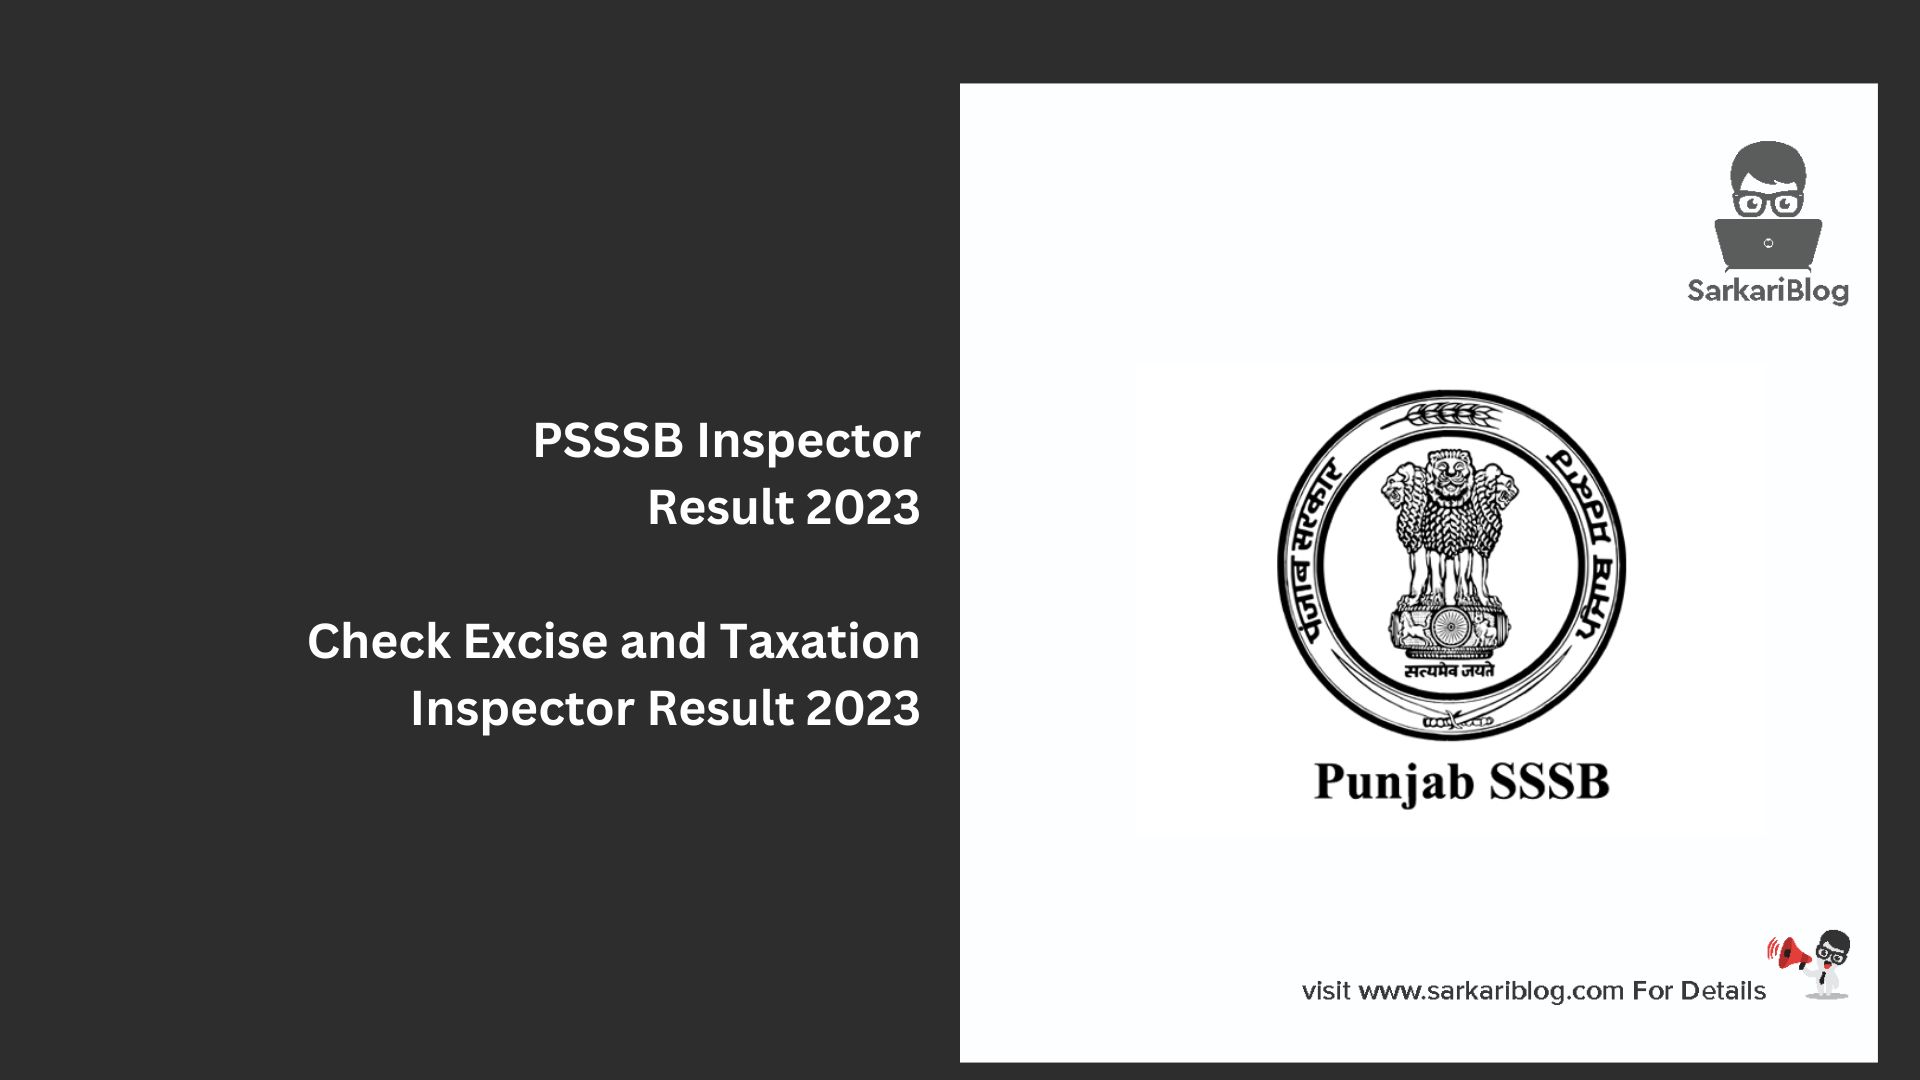 PSSSB Inspector Result 2023